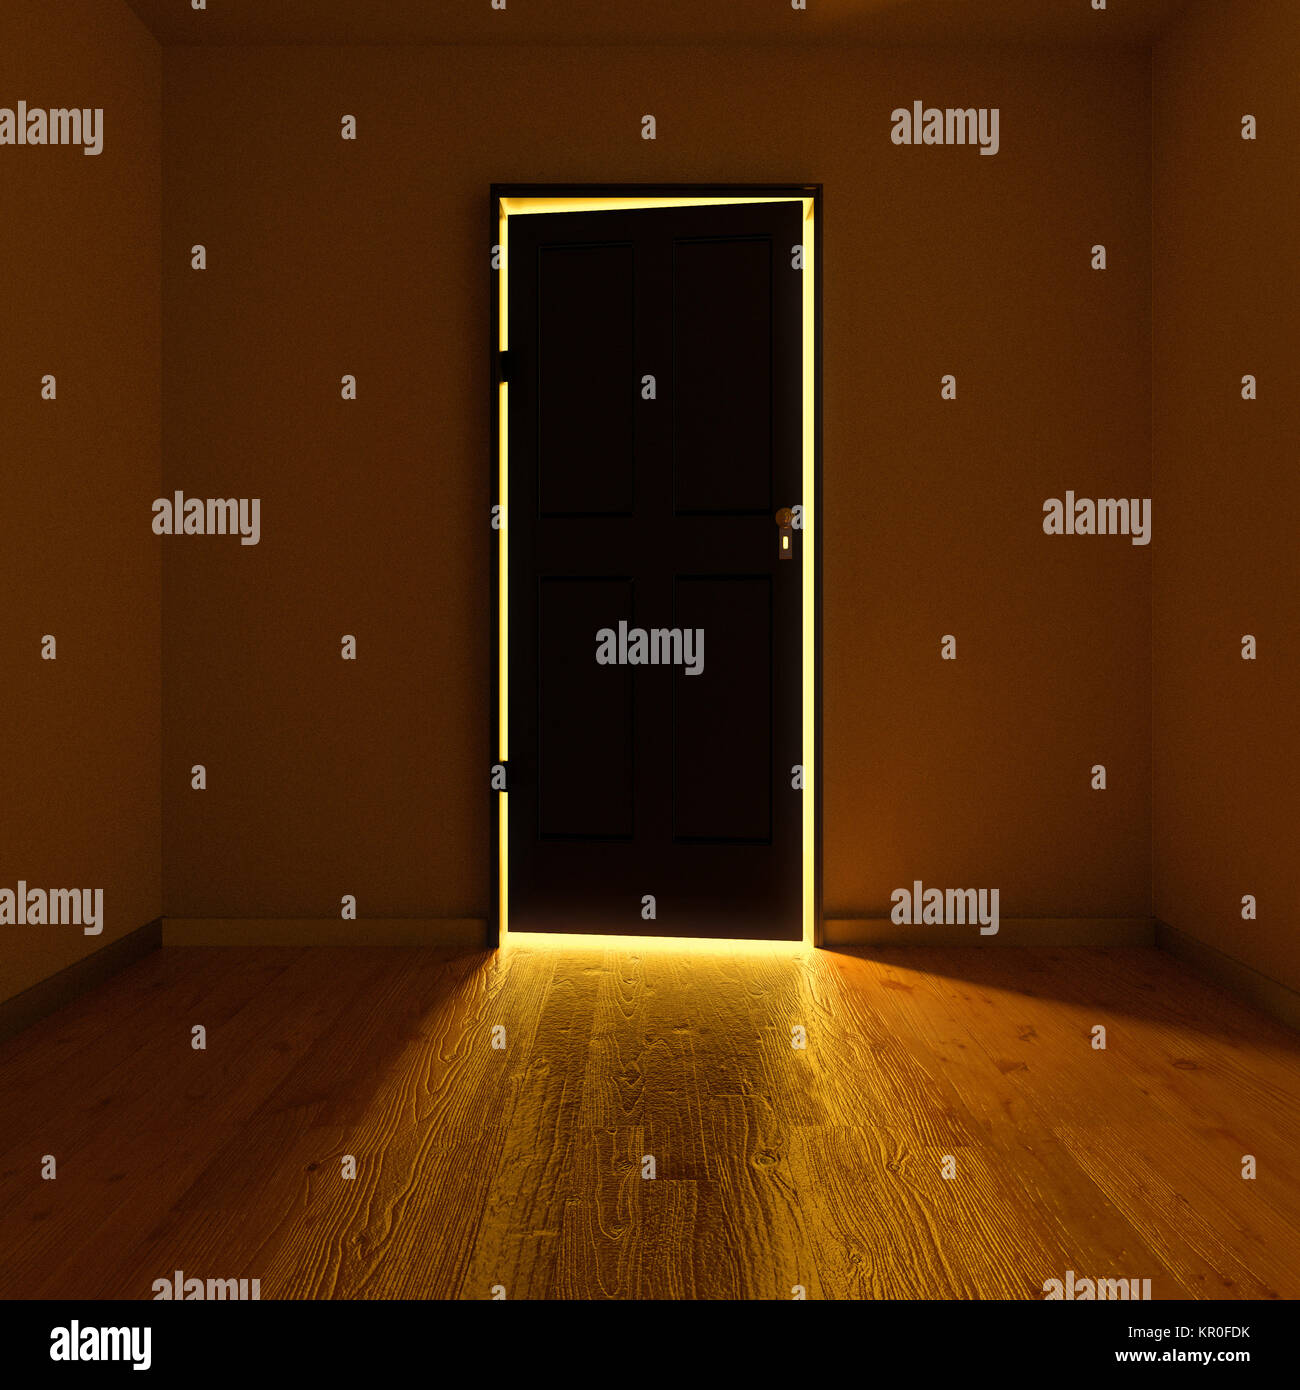 dark room with an illuminated door Stock Photo